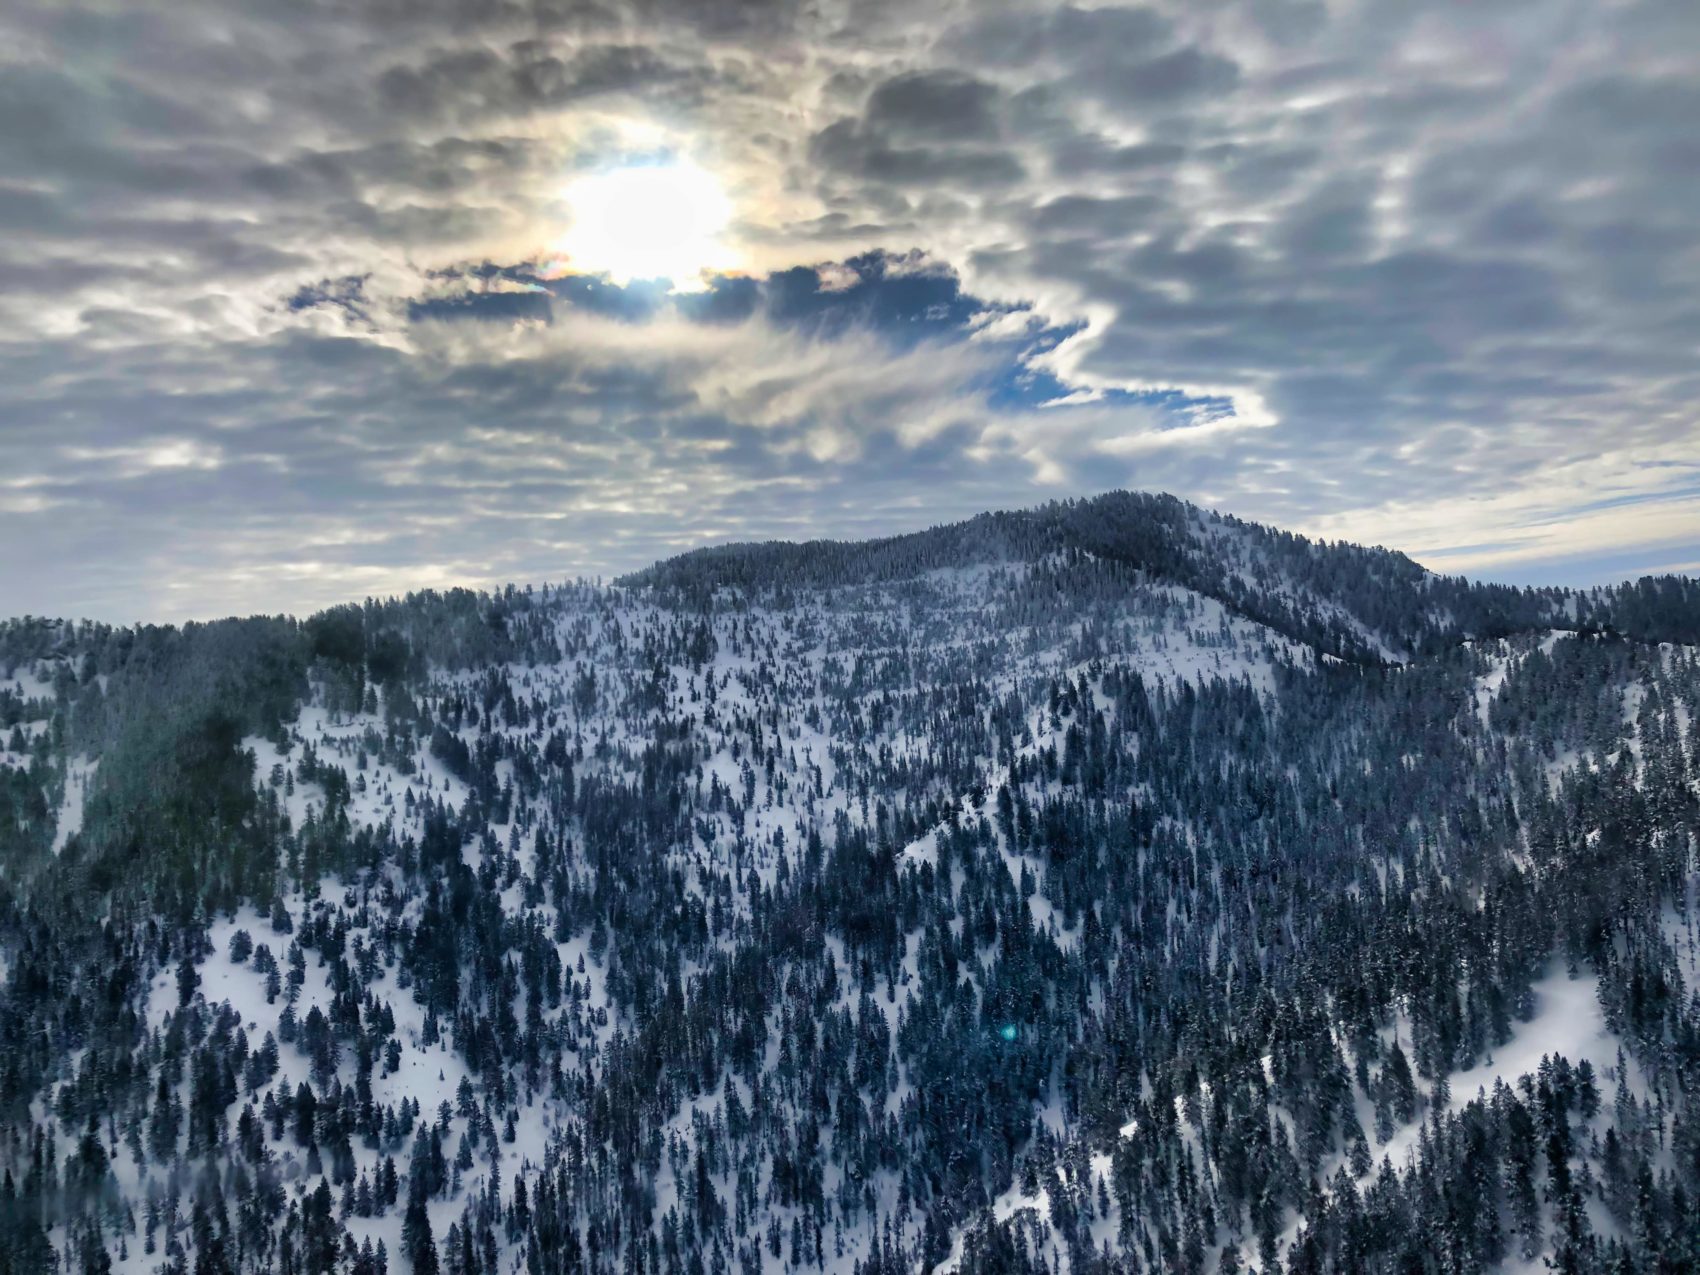 whisper ridge, Heli-skiing, utah